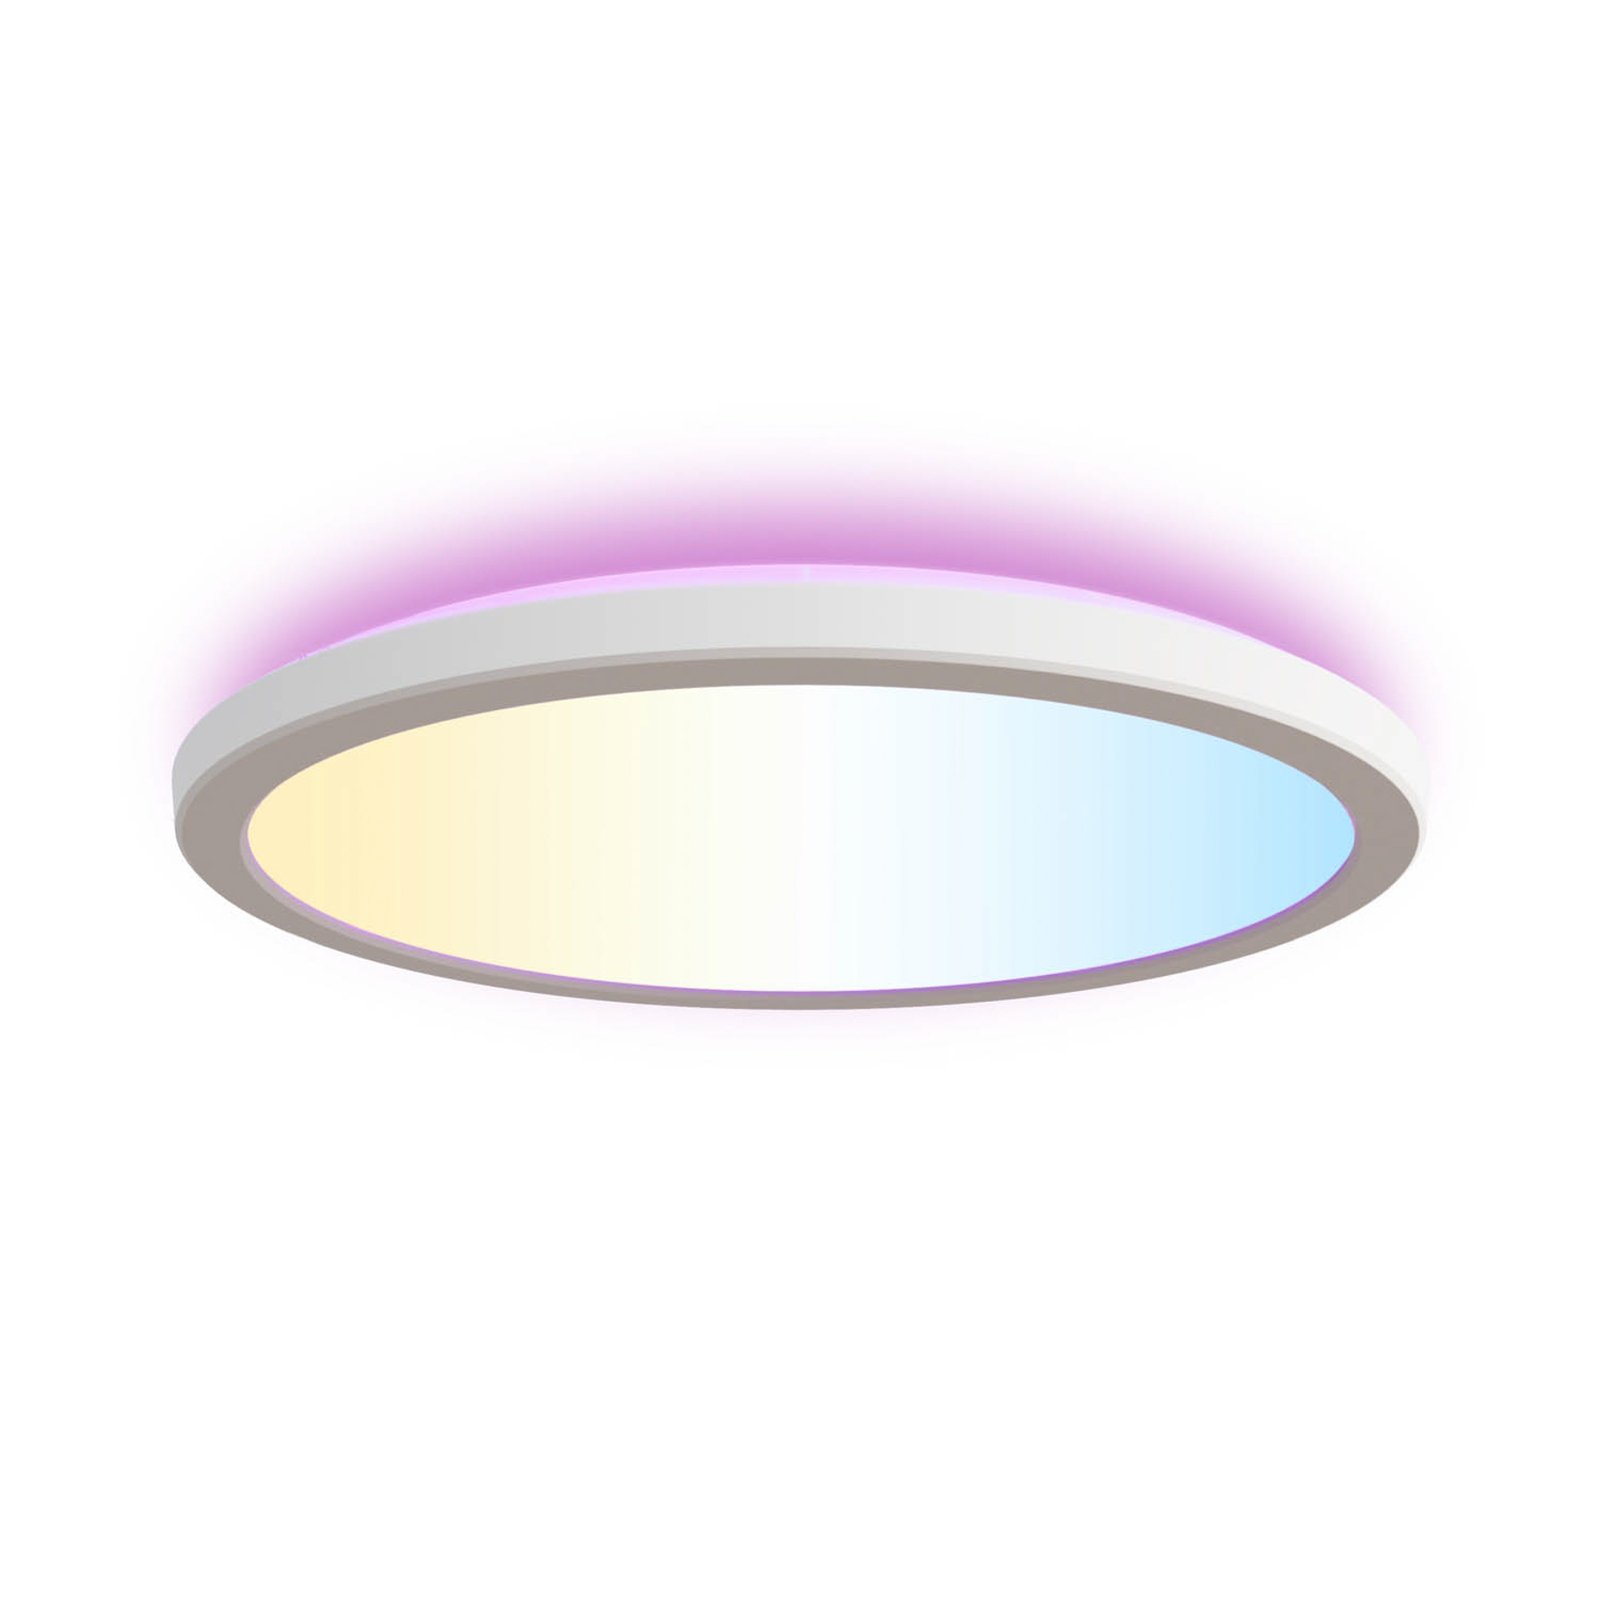 Calex Smart Halo LED mennyezeti világítás Ø 29,2cm